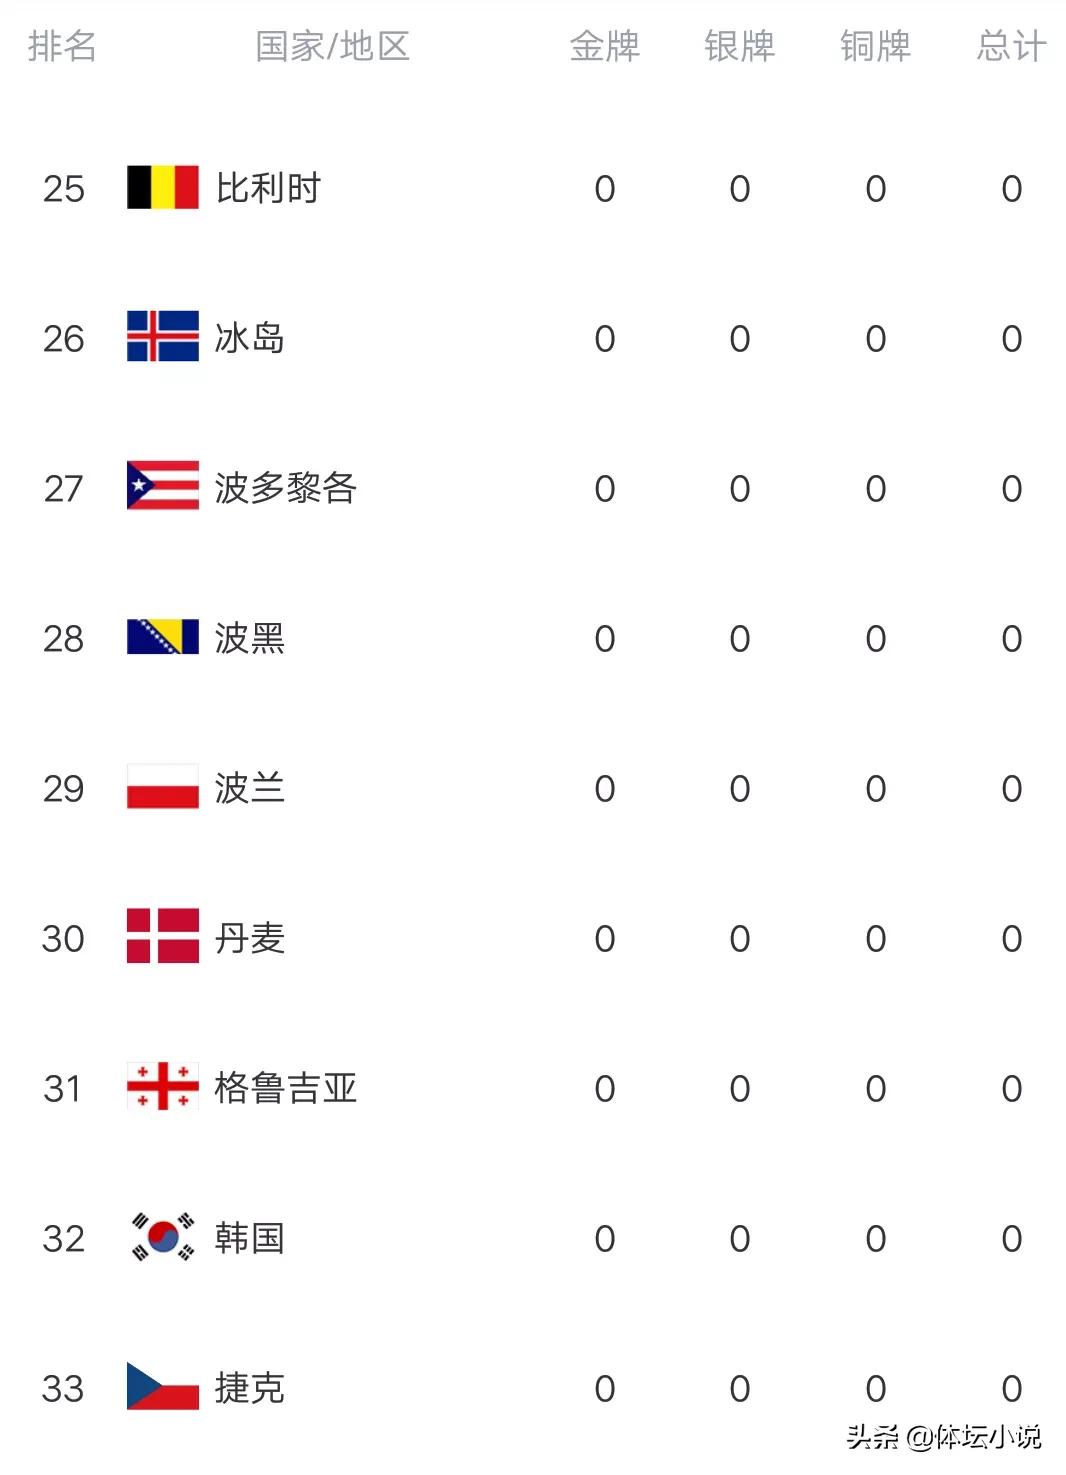 冬残奥最新金牌榜：中国突破8金，乌克兰日进2金，韩国仍未登榜